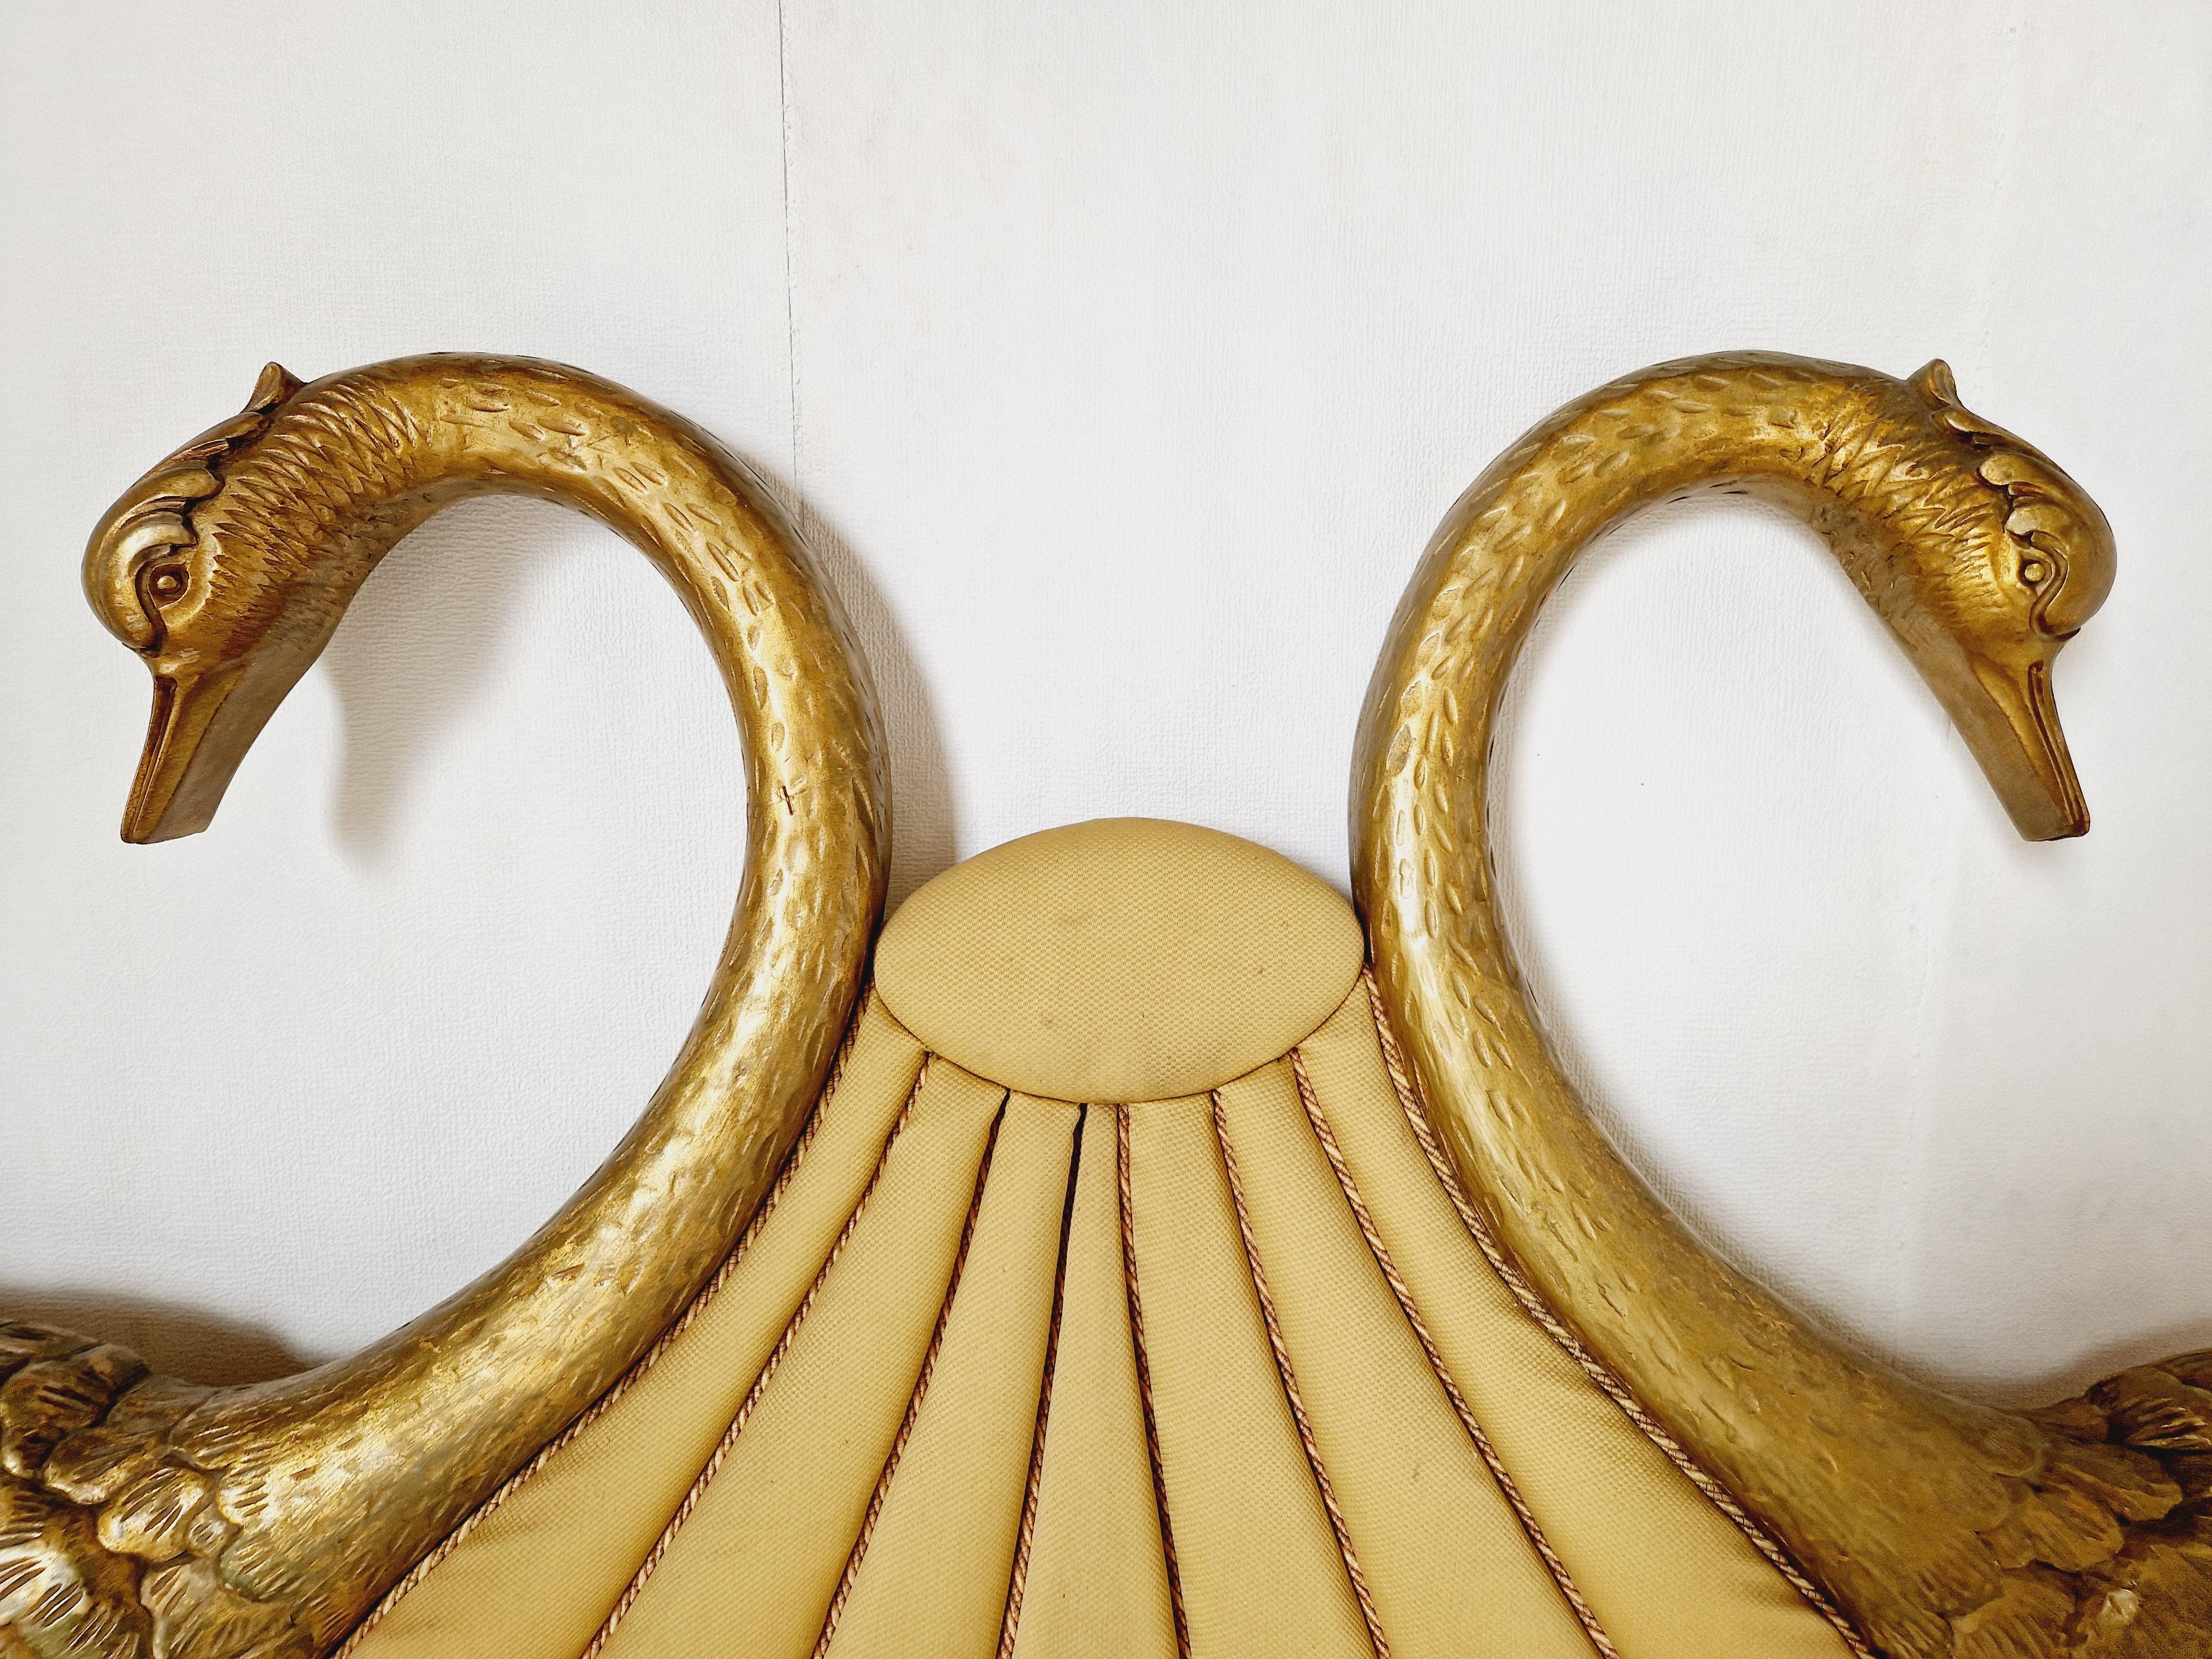 
Verschönern Sie Ihr Schlafzimmer mit diesem Vintage Art Deco Bettkopfteil von Nube mit WOW-Faktor. Dieses aus hochwertigem Holz gefertigte Kopfteil ist mit 2 großen, goldfarben lackierten Schwänen versehen, die jedem Raum einen Hauch von Glamour